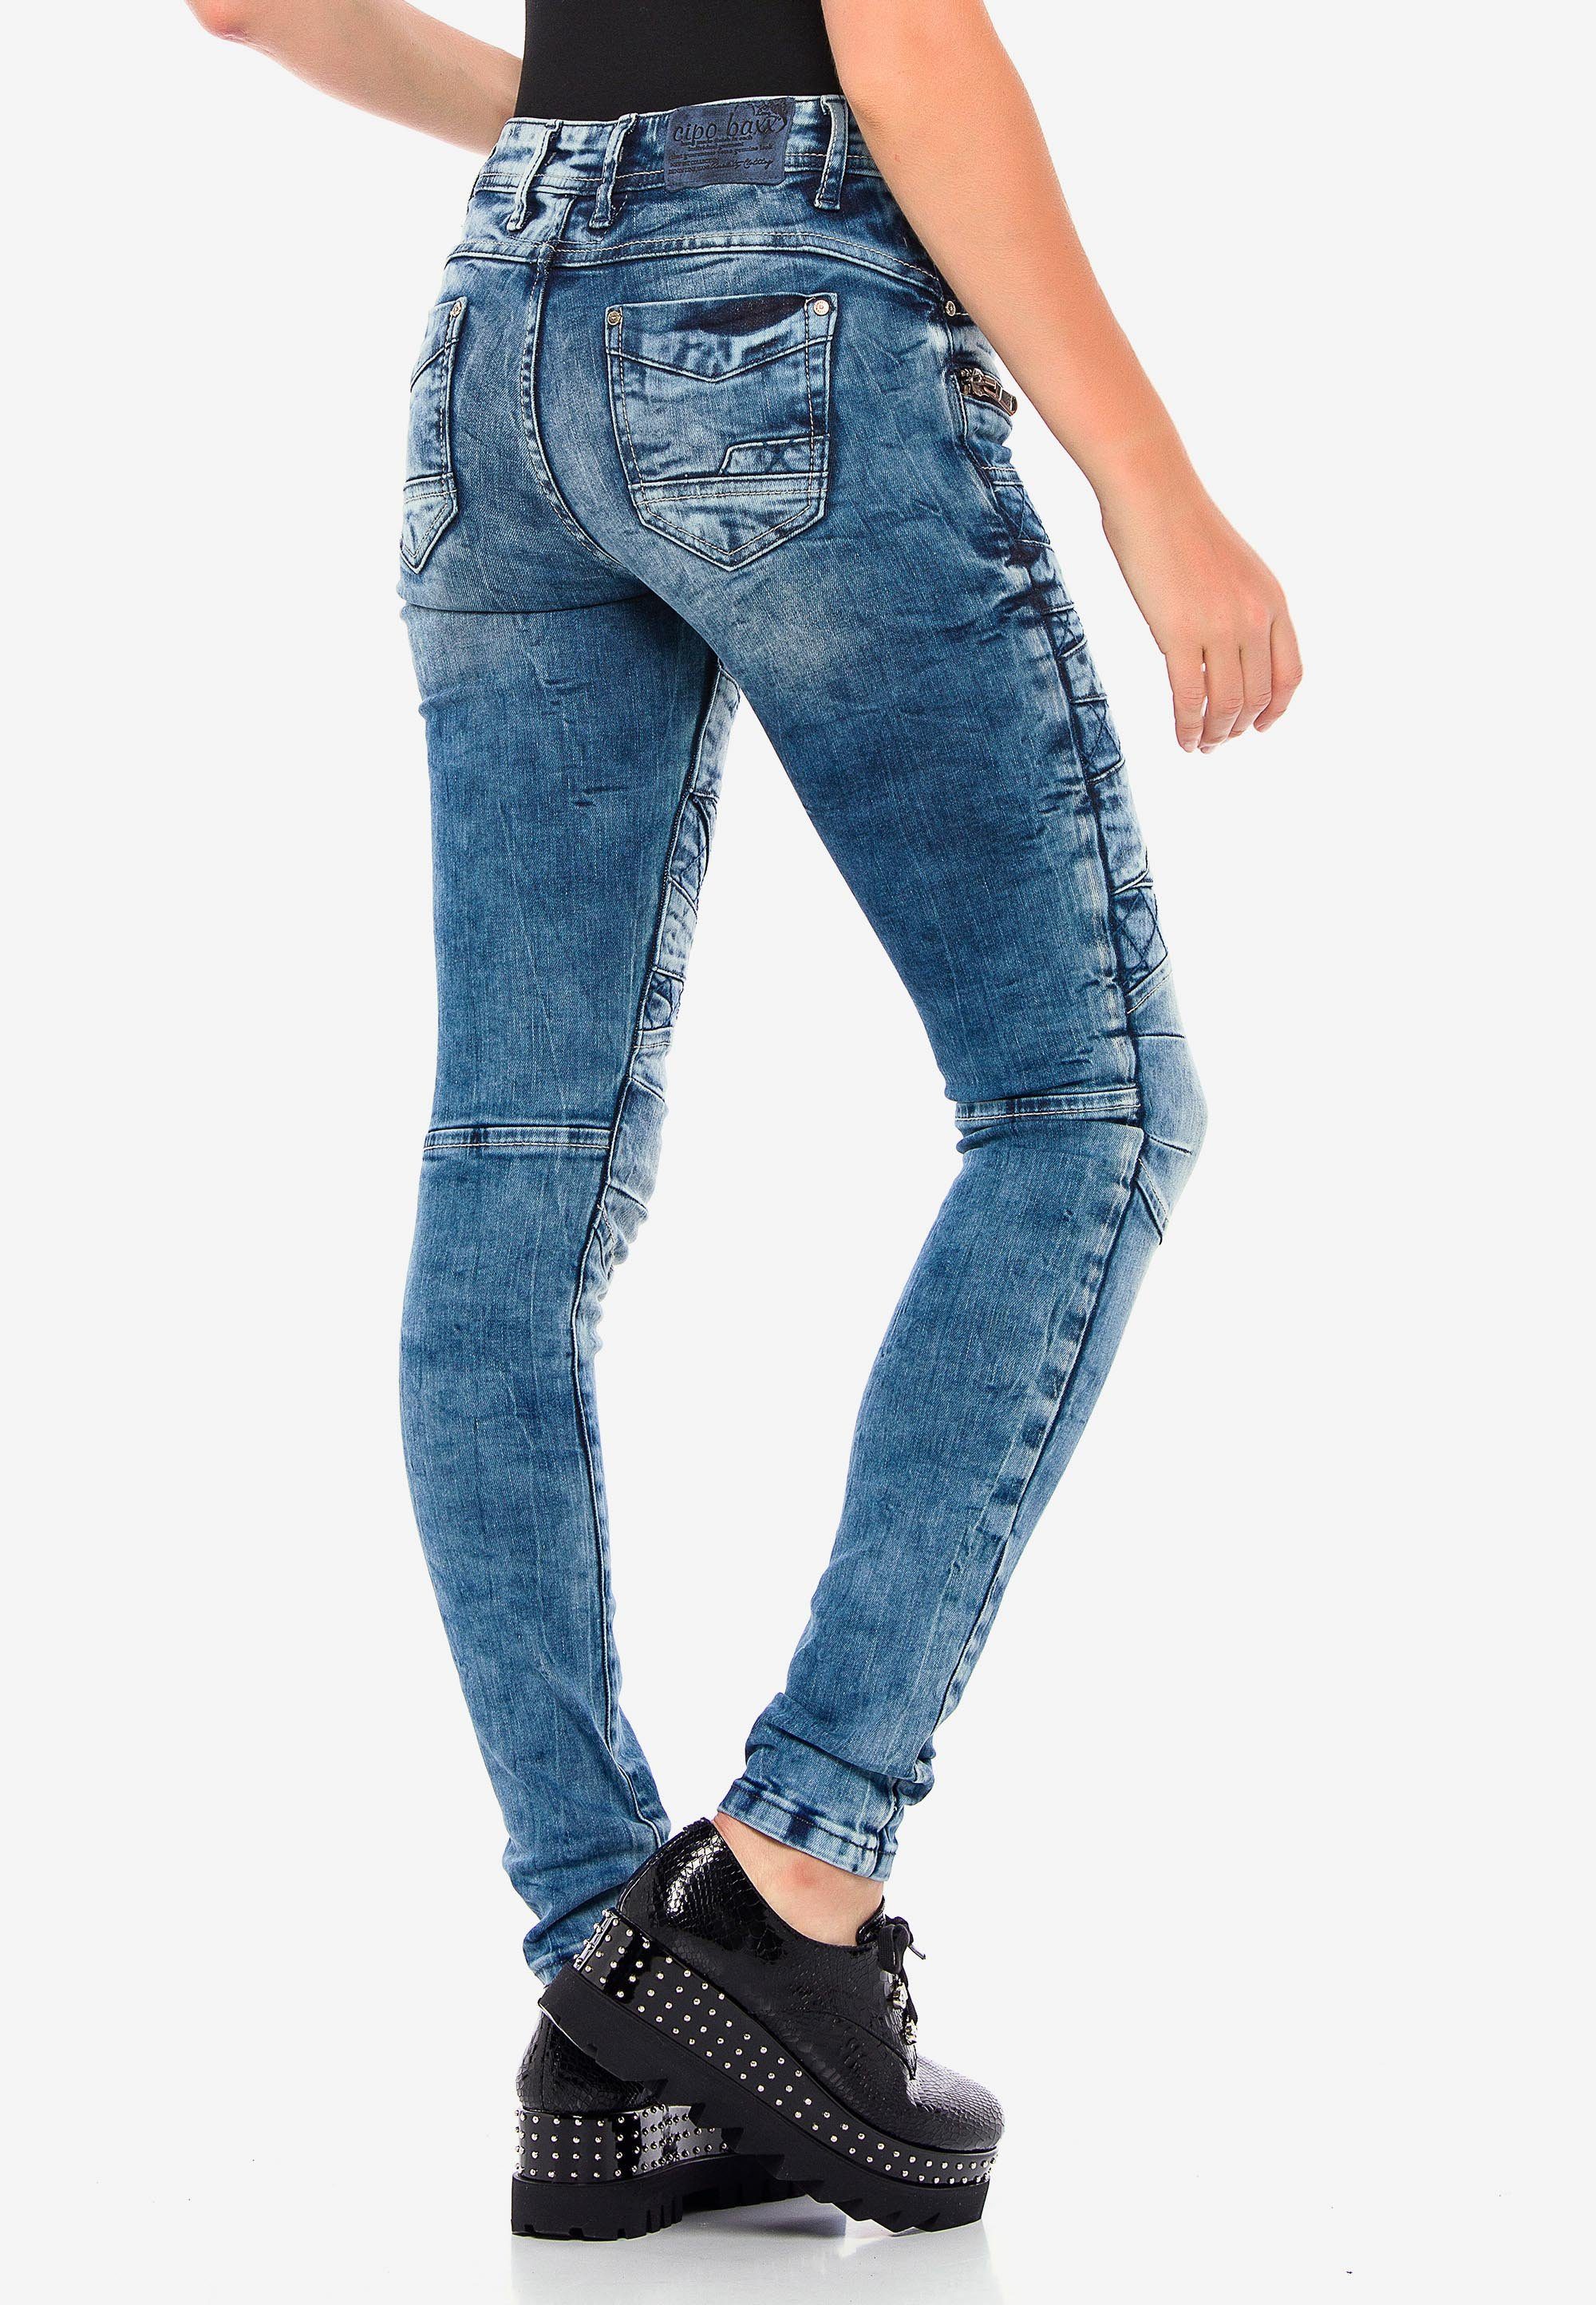 Damen Jeans Cipo & Baxx Straight-Jeans mit coolen Stickelementen